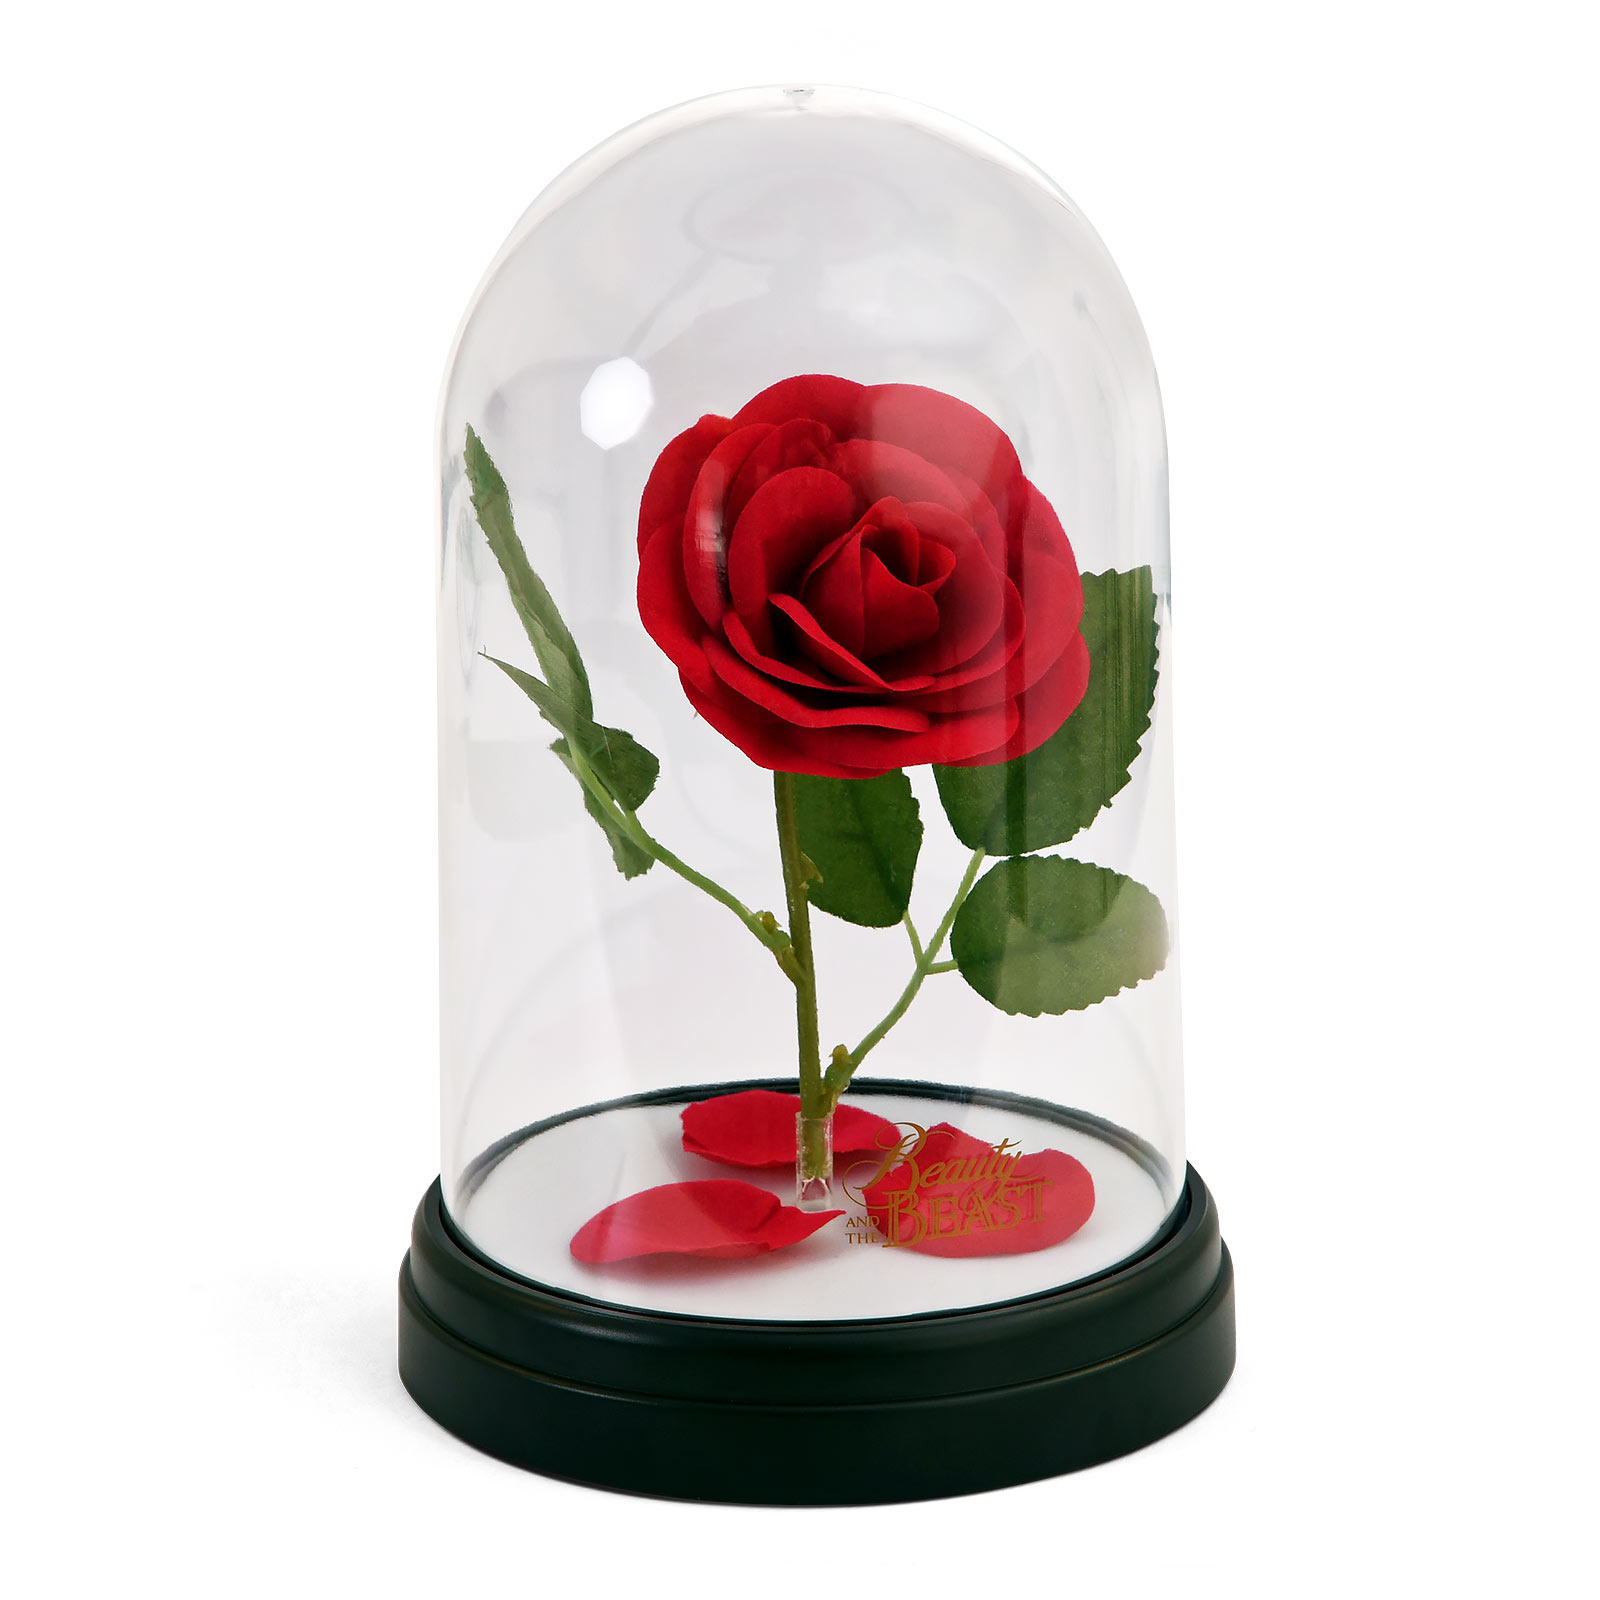 Die Schöne und das Biest - Enchanted Rose Tischlampe